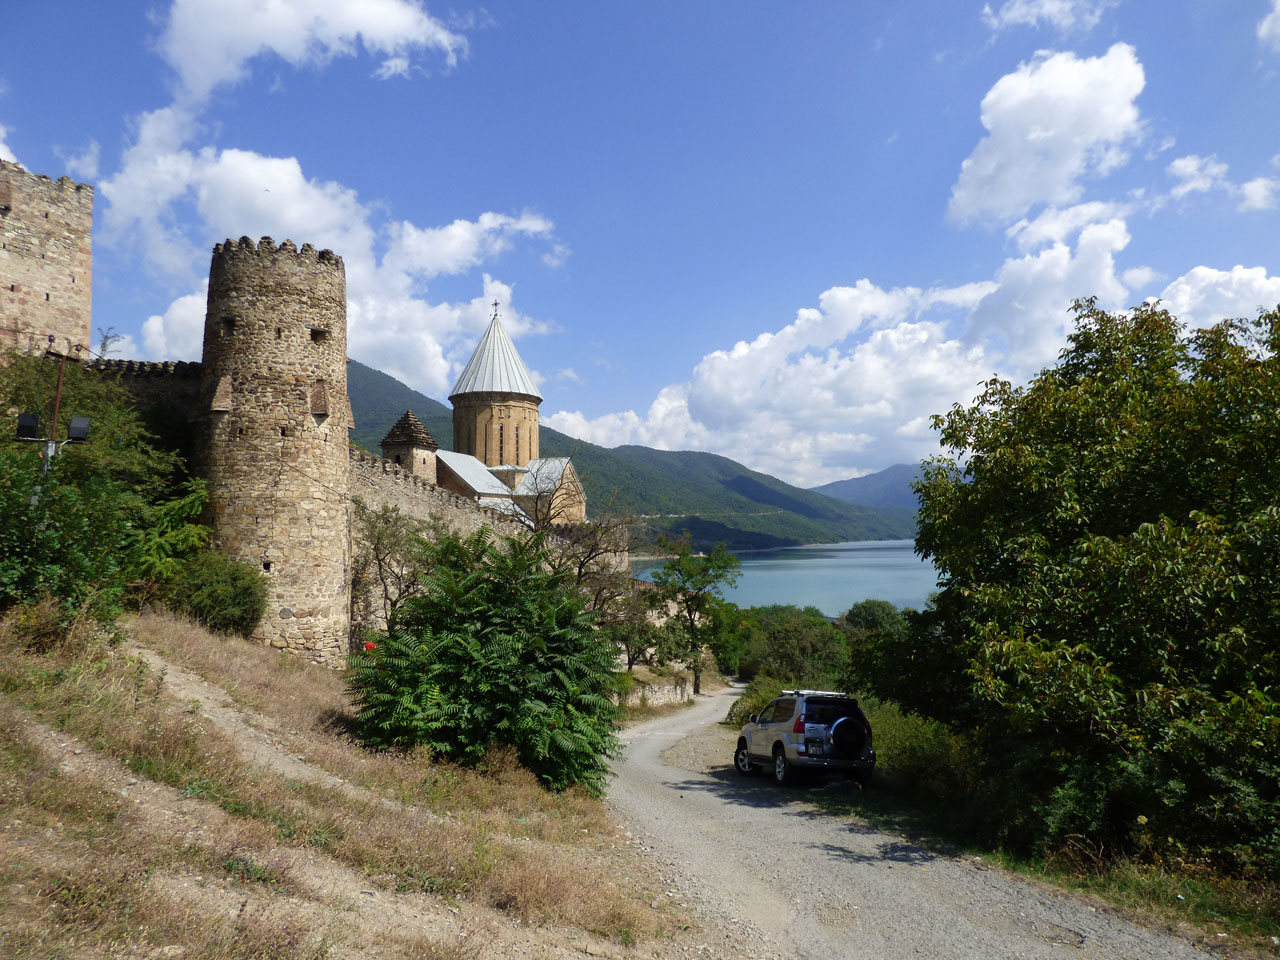 Ananuri fortress, Georgia